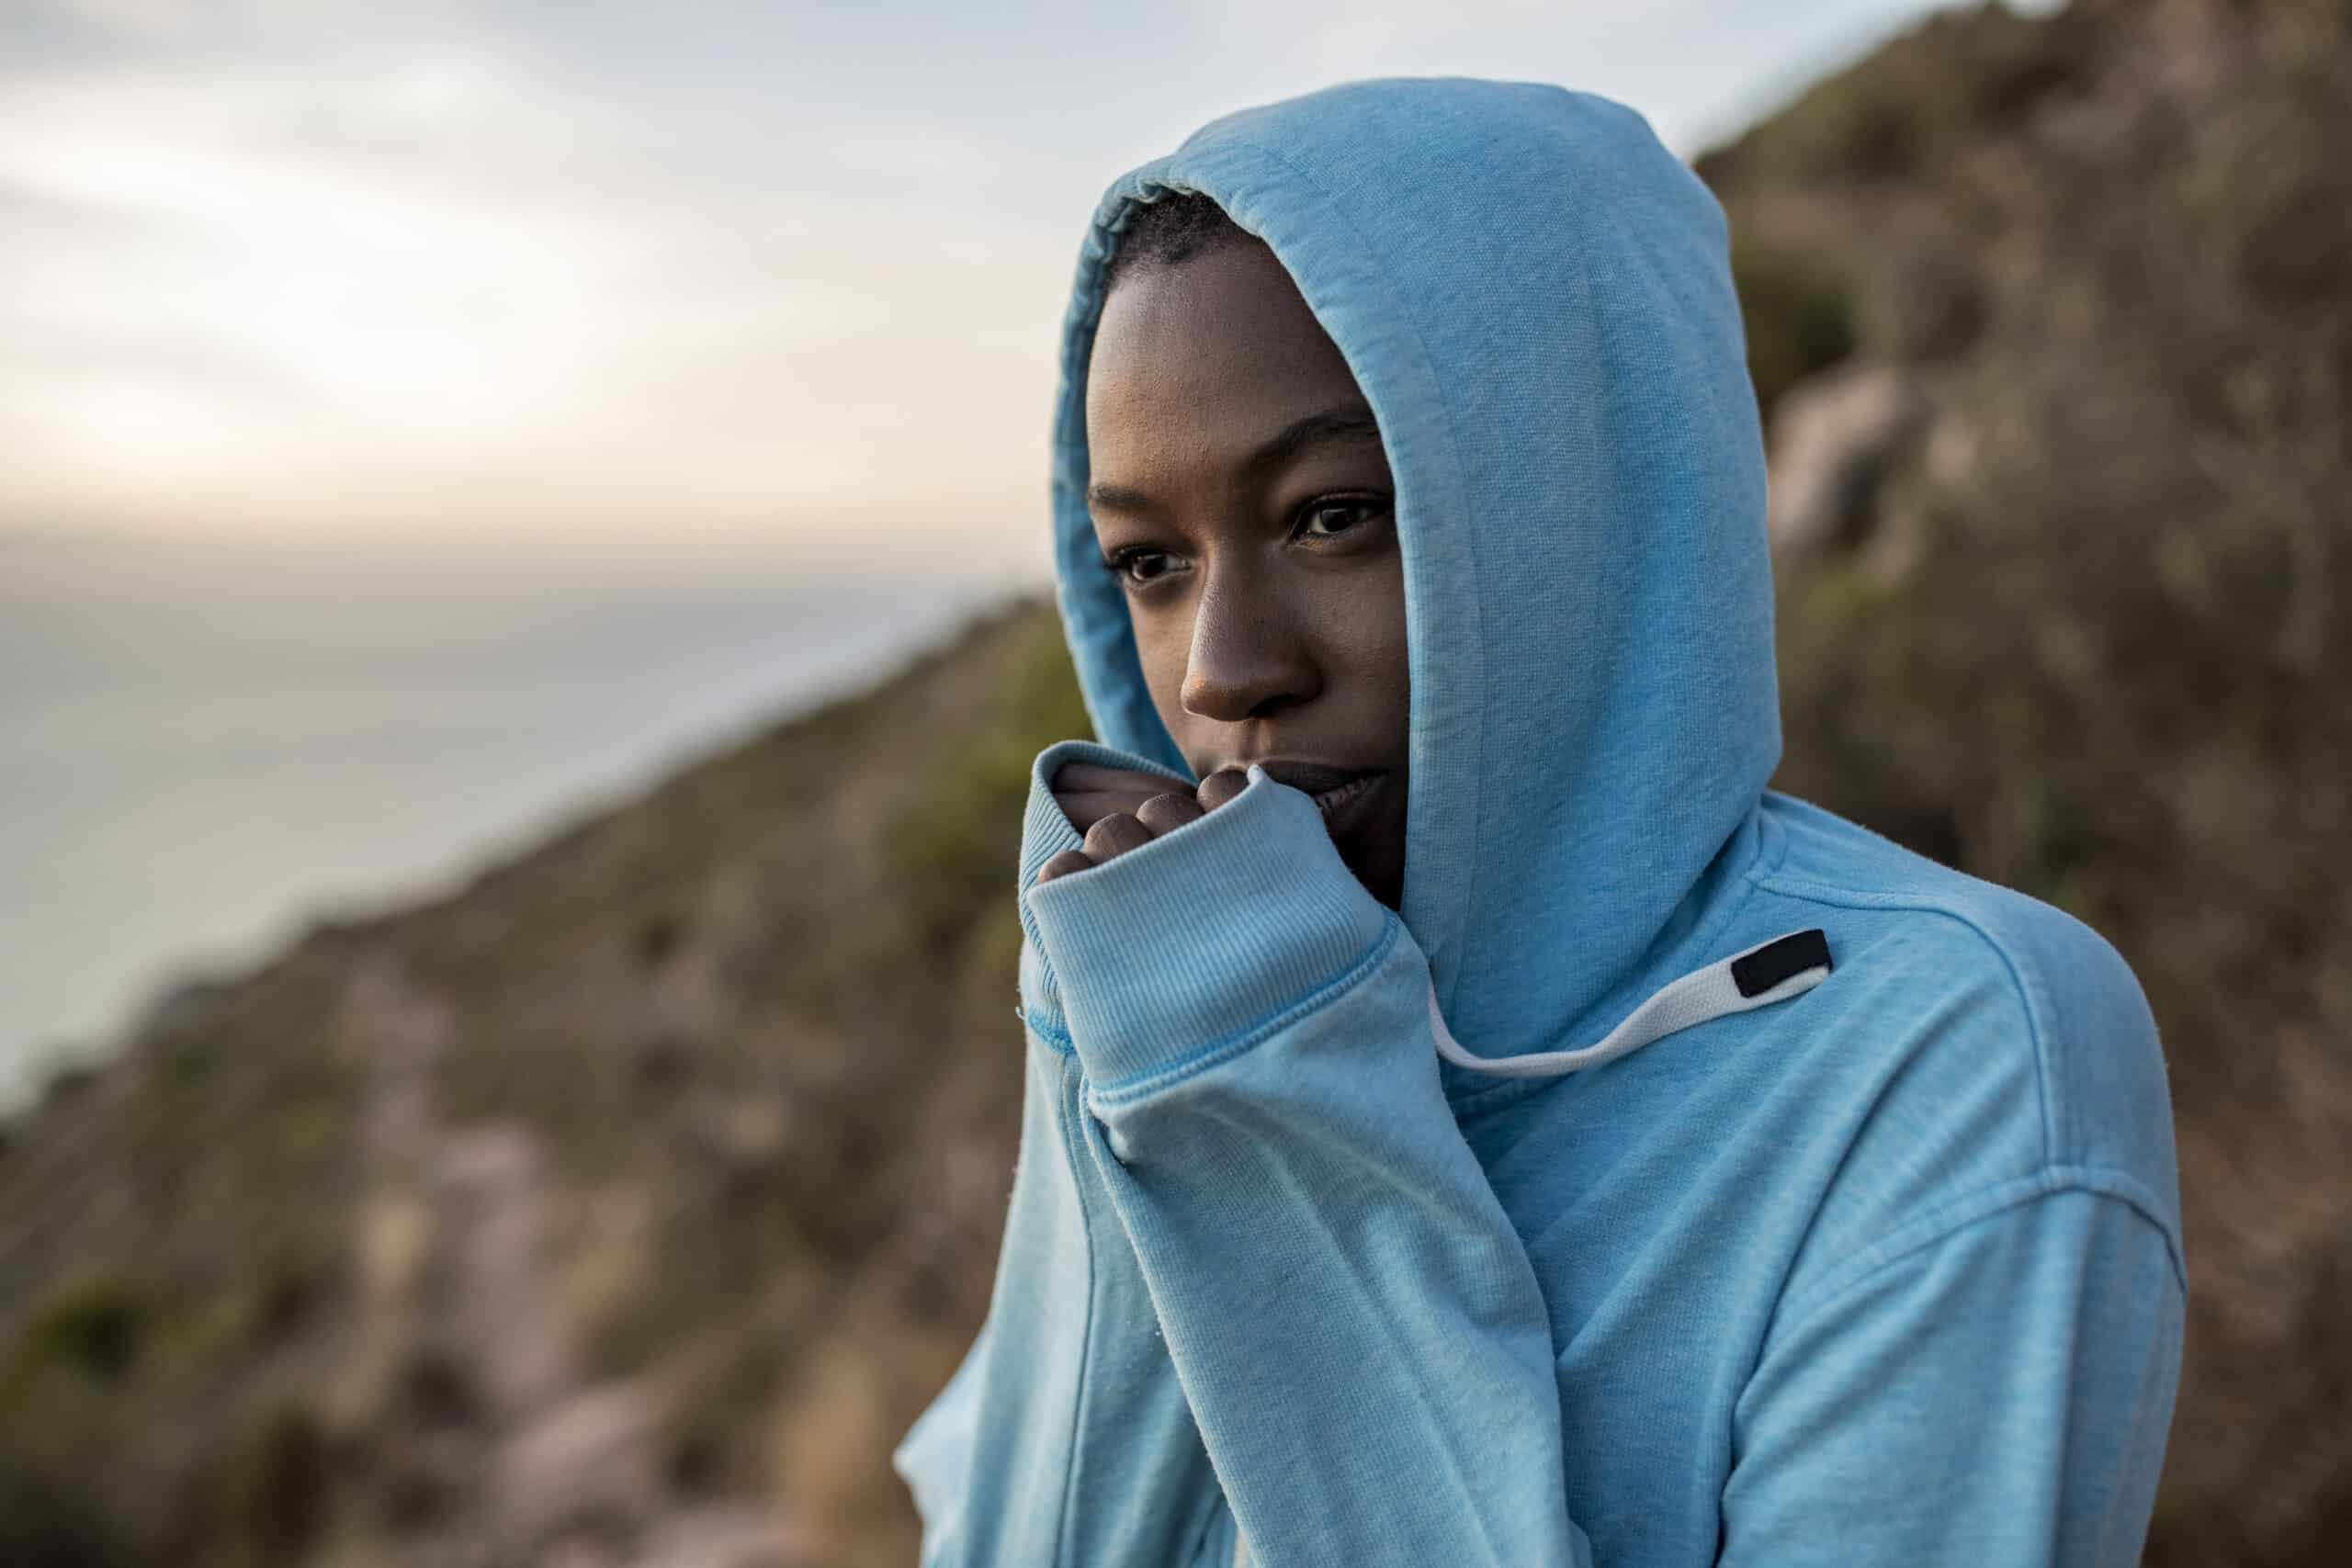 Eine nachdenkliche junge Frau in einem blauen Kapuzenpullover steht im Freien. Ihr Gesicht ist teilweise von der Kapuze bedeckt. Im Hintergrund ist eine heitere Landschaft mit weichem Fokus zu sehen. © Fotografie Tomas Rodriguez